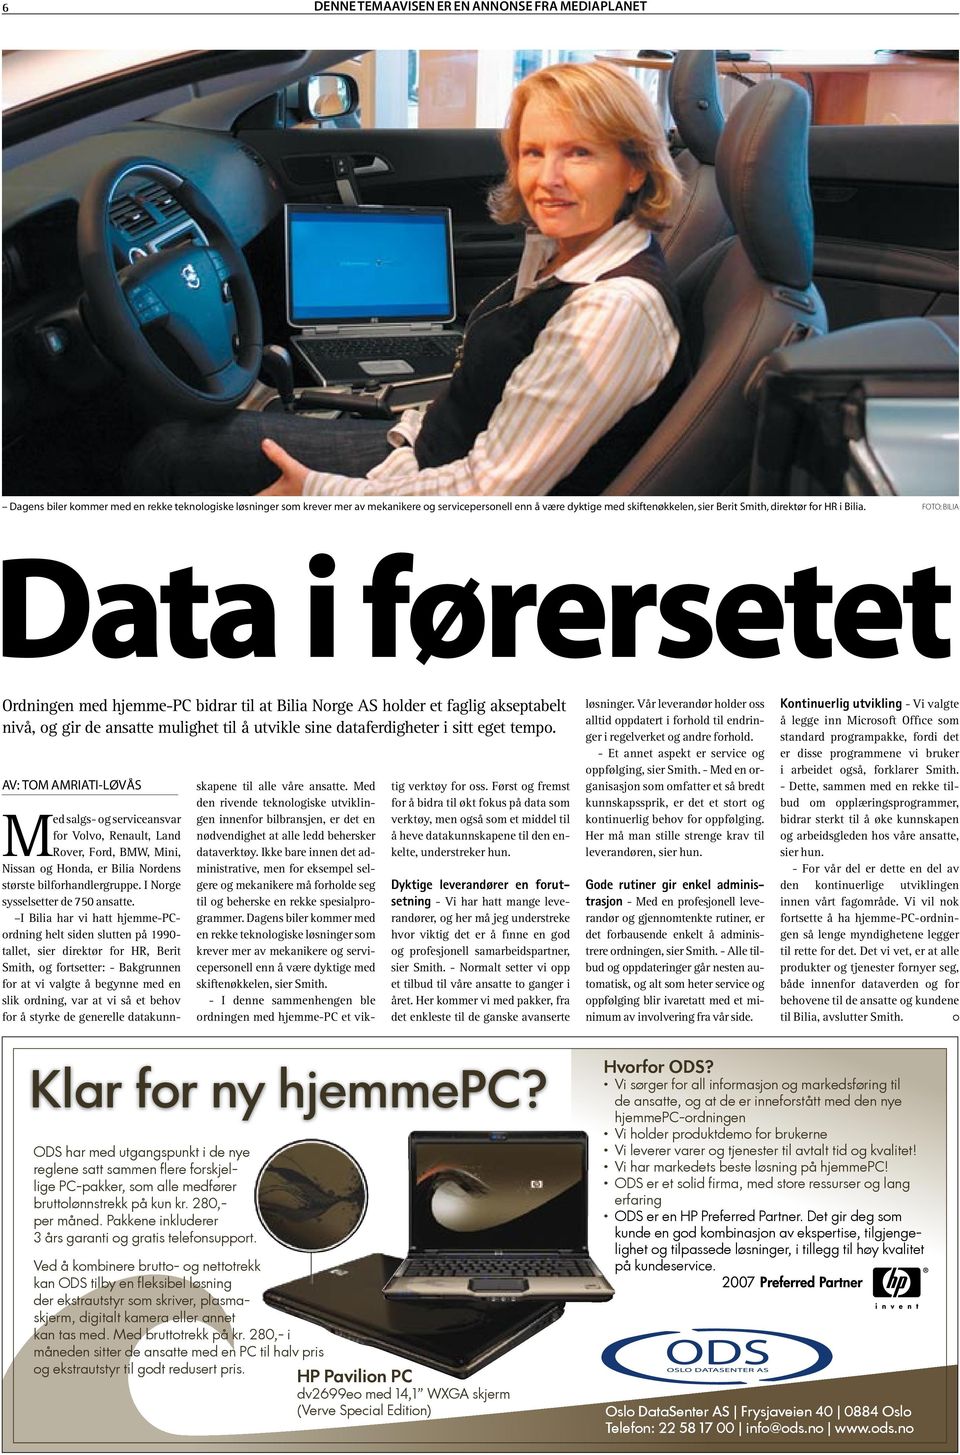 Foto: Bilia Data i førersetet Ordningen med hjemme-pc bidrar til at Bilia Norge AS holder et faglig akseptabelt nivå, og gir de ansatte mulighet til å utvikle sine dataferdigheter i sitt eget tempo.